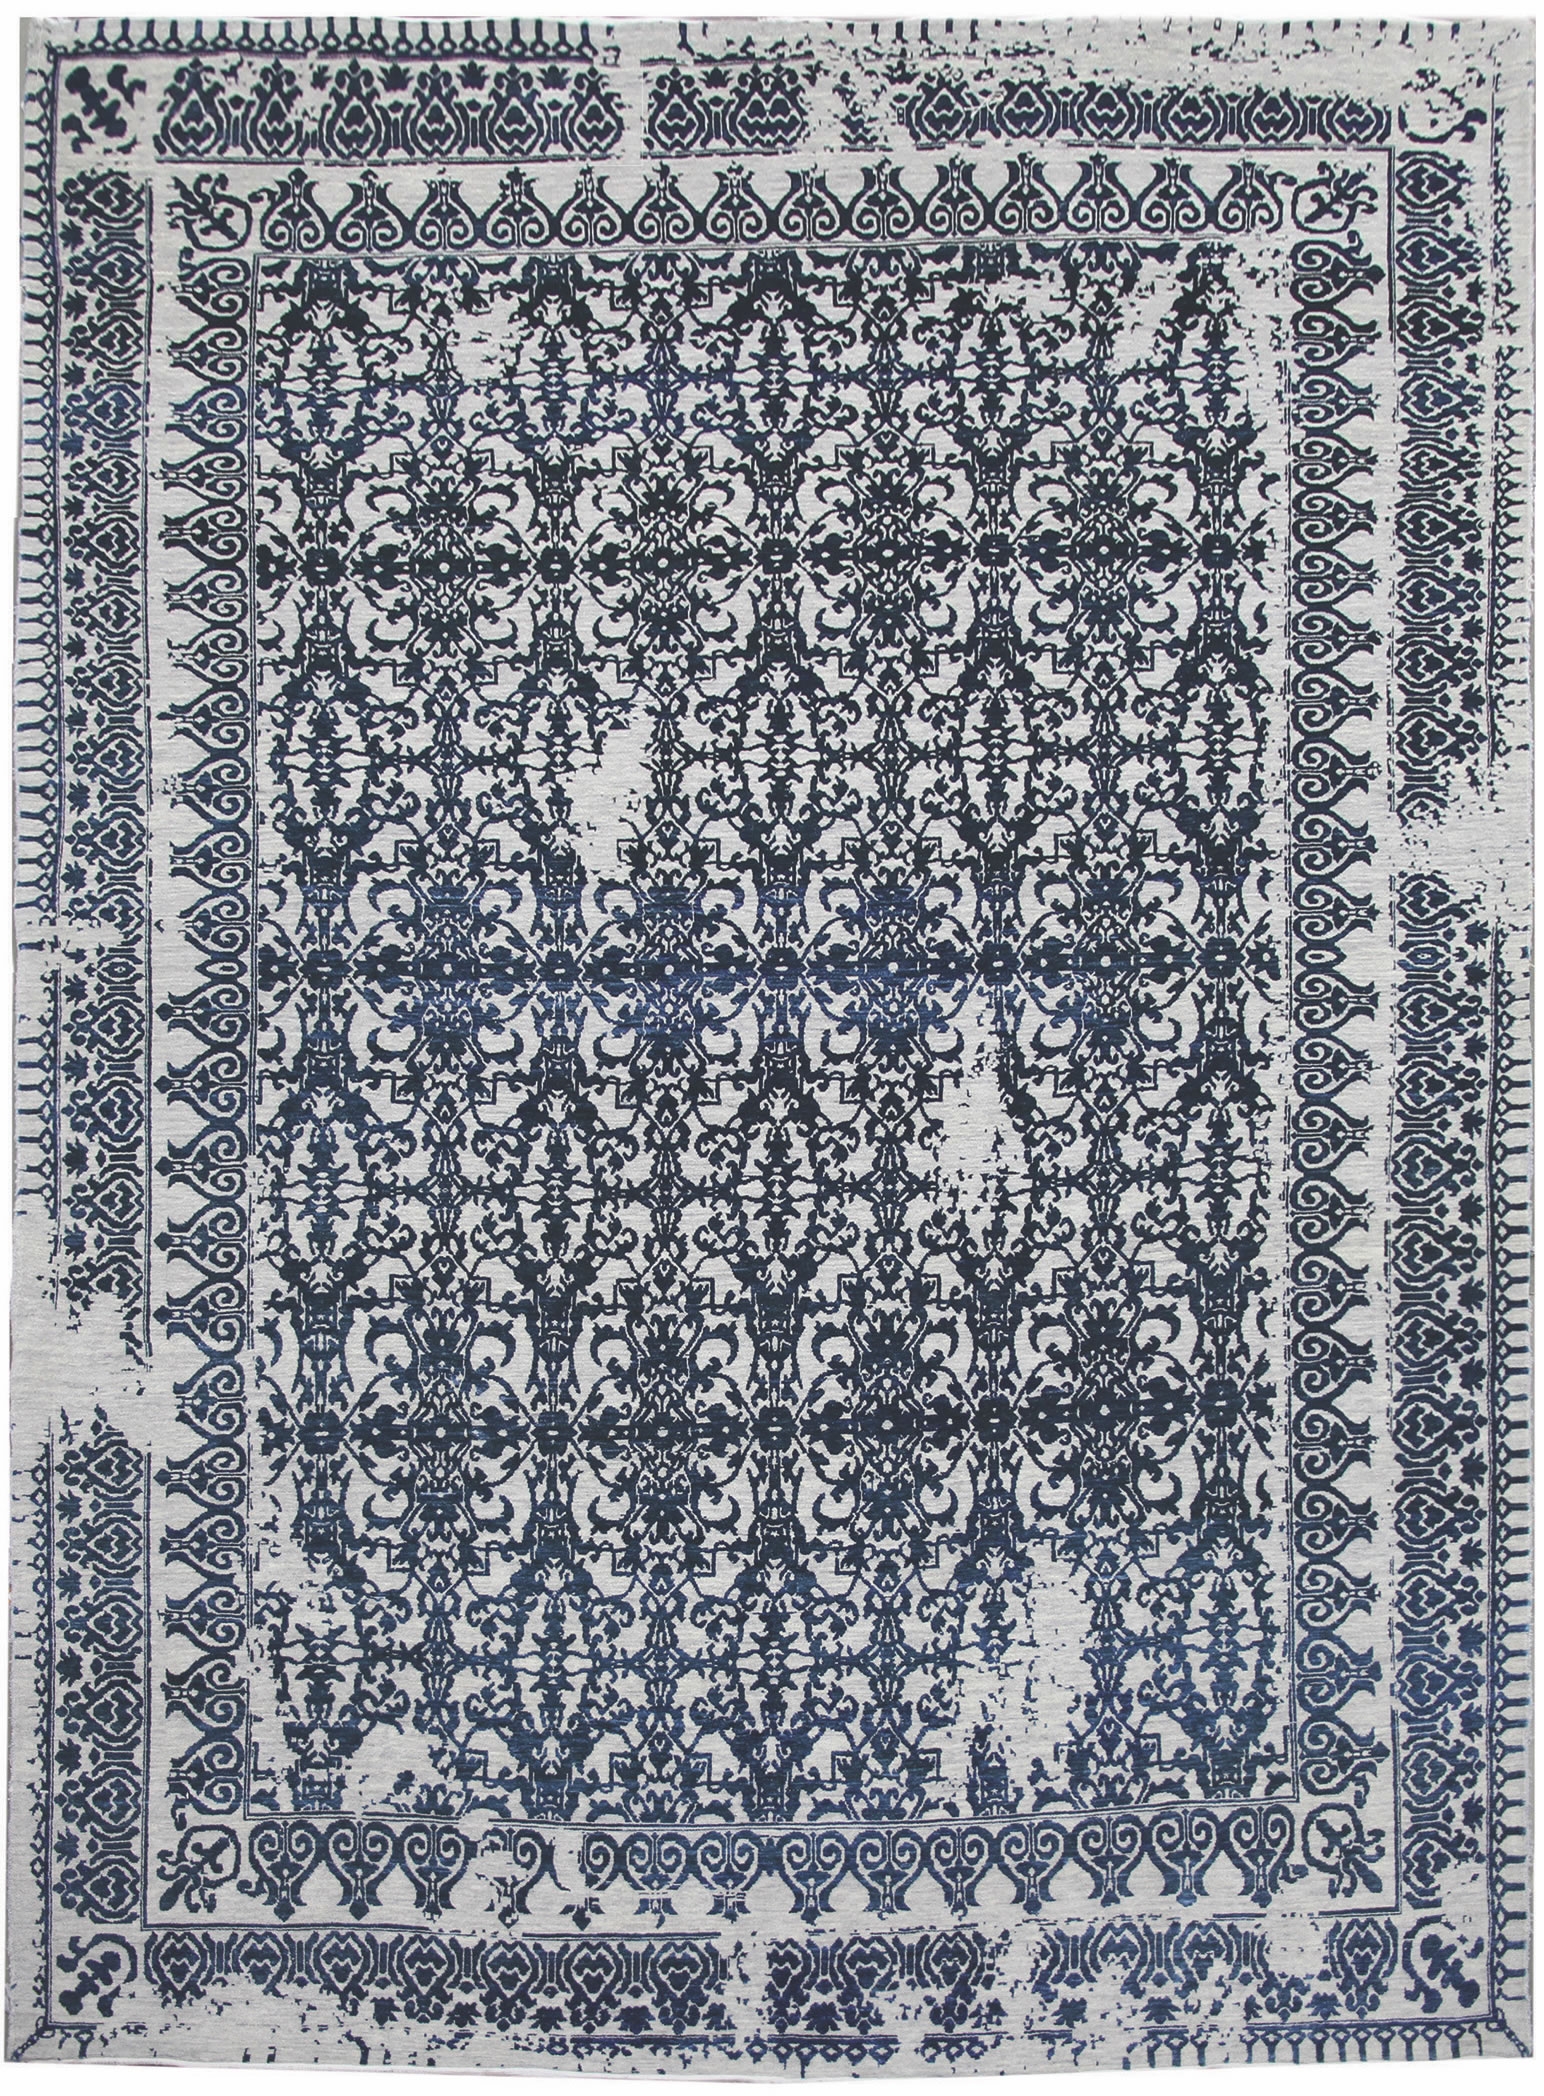 Ručne viazaný kusový koberec Diamond DC-JK 7 Silver / denim - 120x170 cm Diamond Carpets koberce 